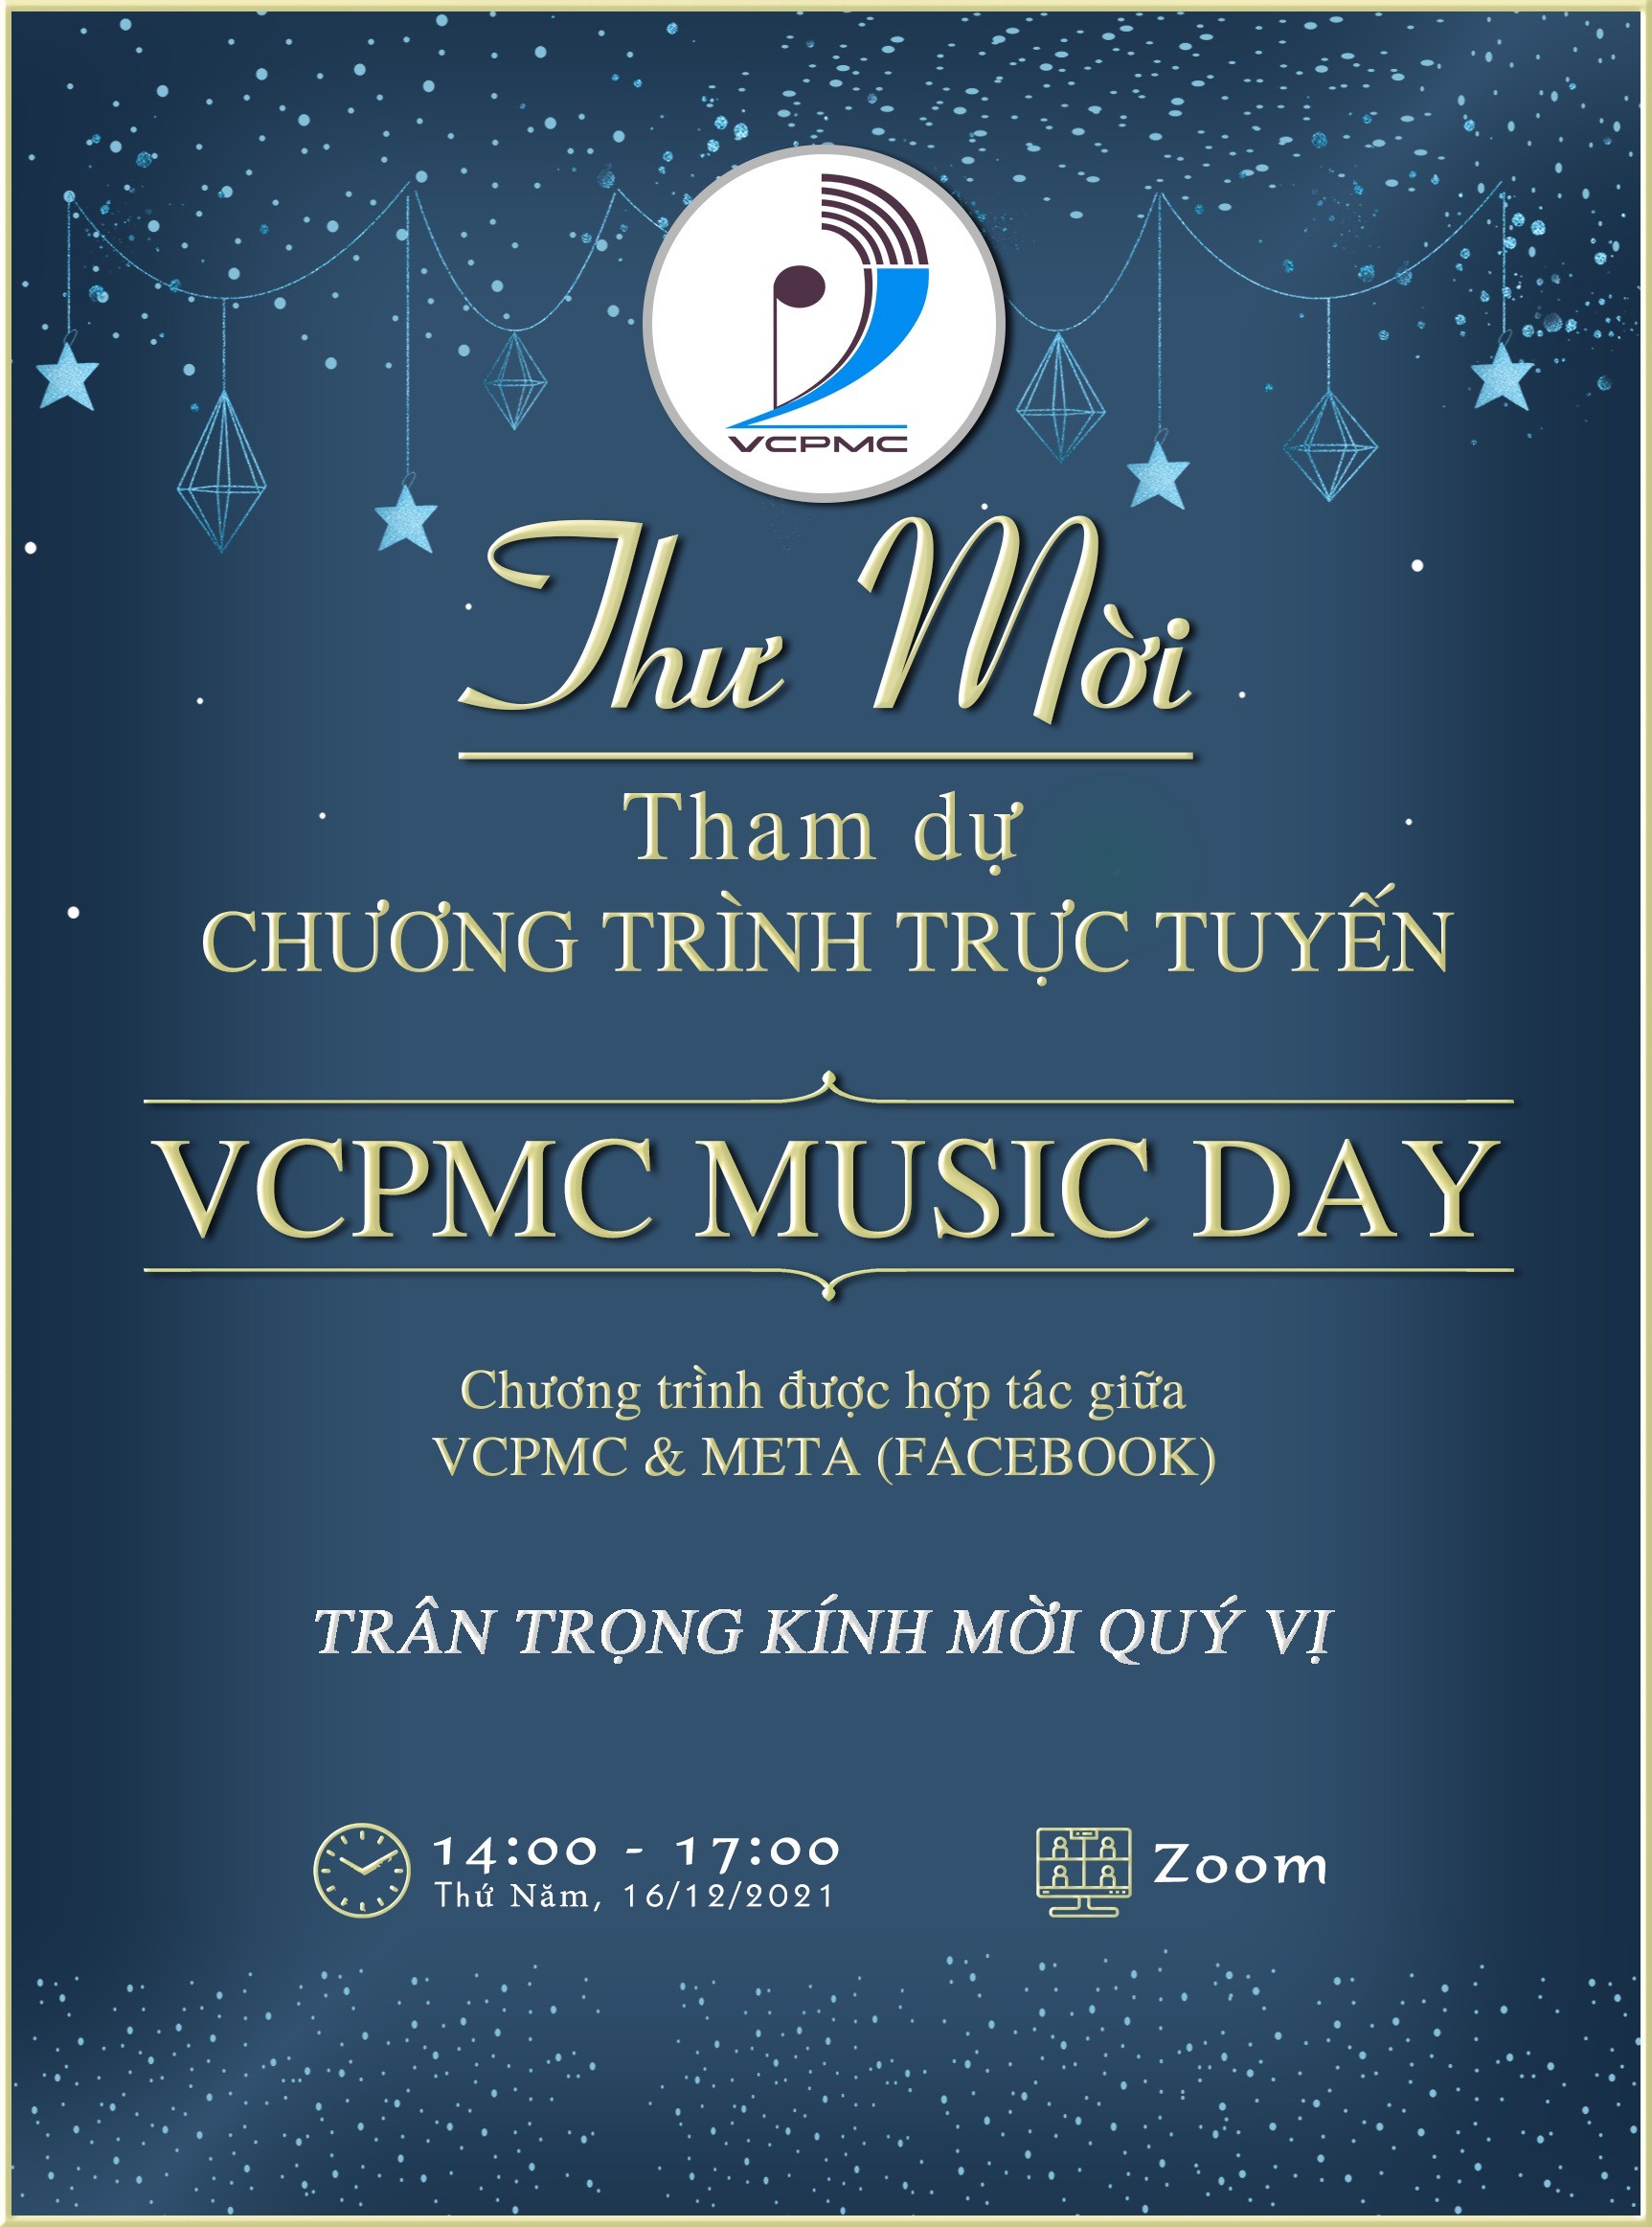 VCPMC Music day: Ngày âm nhạc của VCPMC sẽ mang đến những giây phút tuyệt vời và đầy màu sắc với màn trình diễn các bản nhạc tuyệt vời. Xem hình ảnh để cảm nhận không khí sôi động và năng động của ngày hội âm nhạc đầy ý nghĩa này.